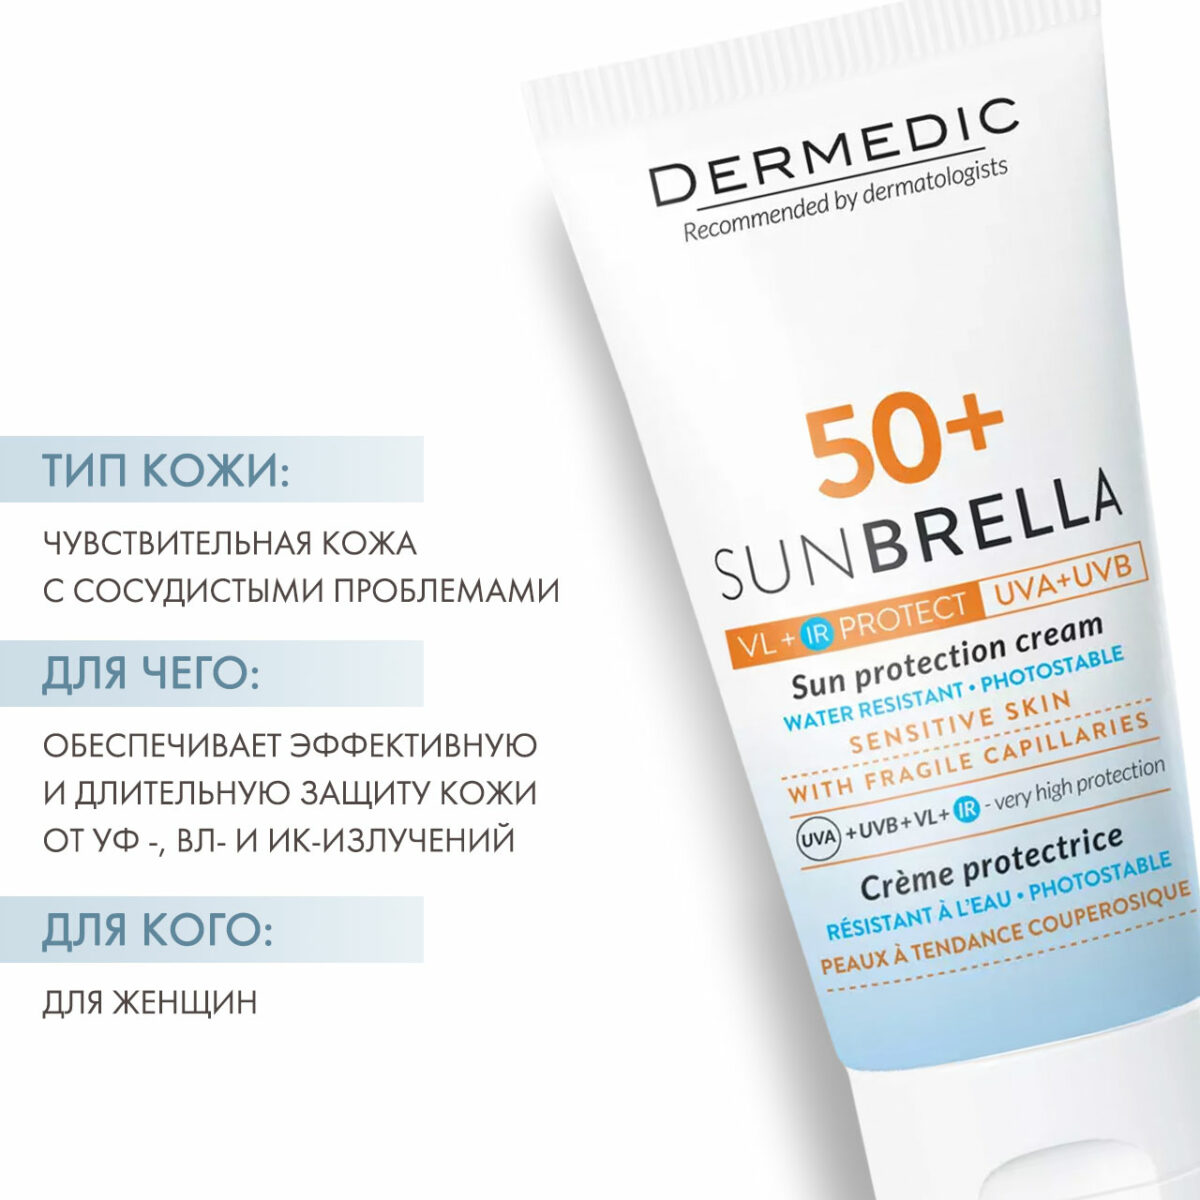 Sunbrella Sun Protection Cream Sensitive Skin SPF 50+ Солнцезащитный крем для чувствительной кожи 50 мл DERMEDIC